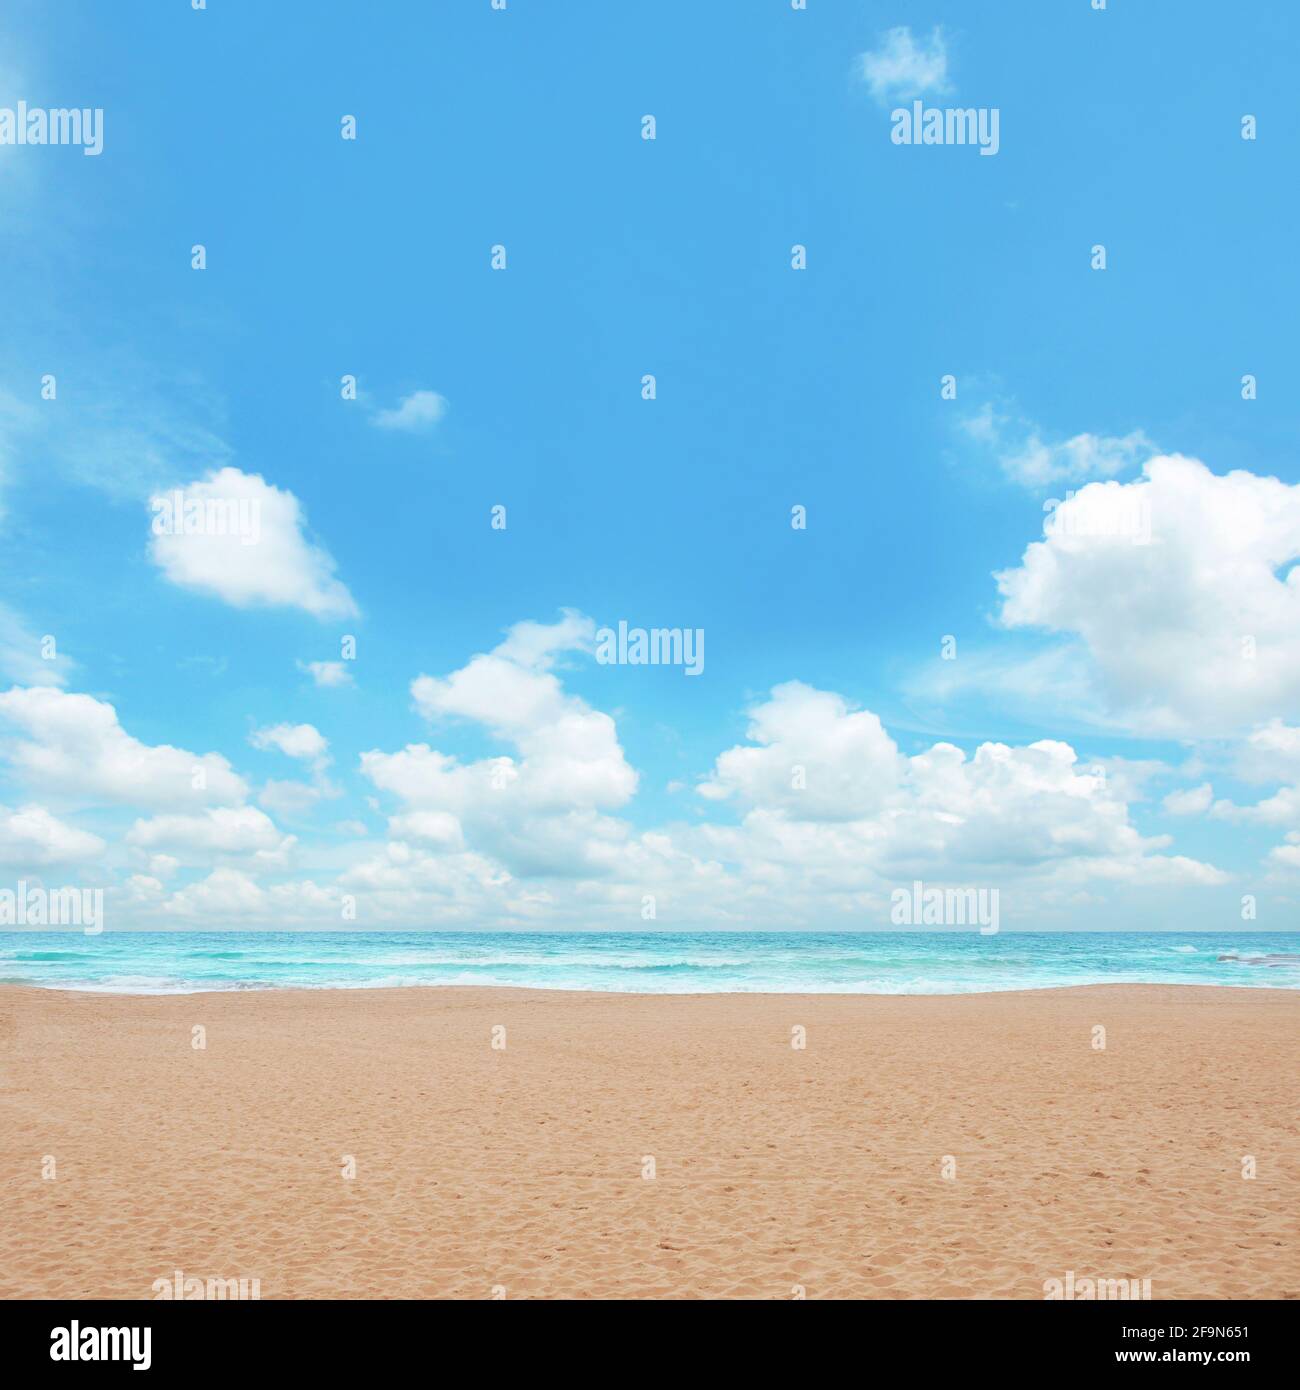 Sand beach and blue sky Stock Photo